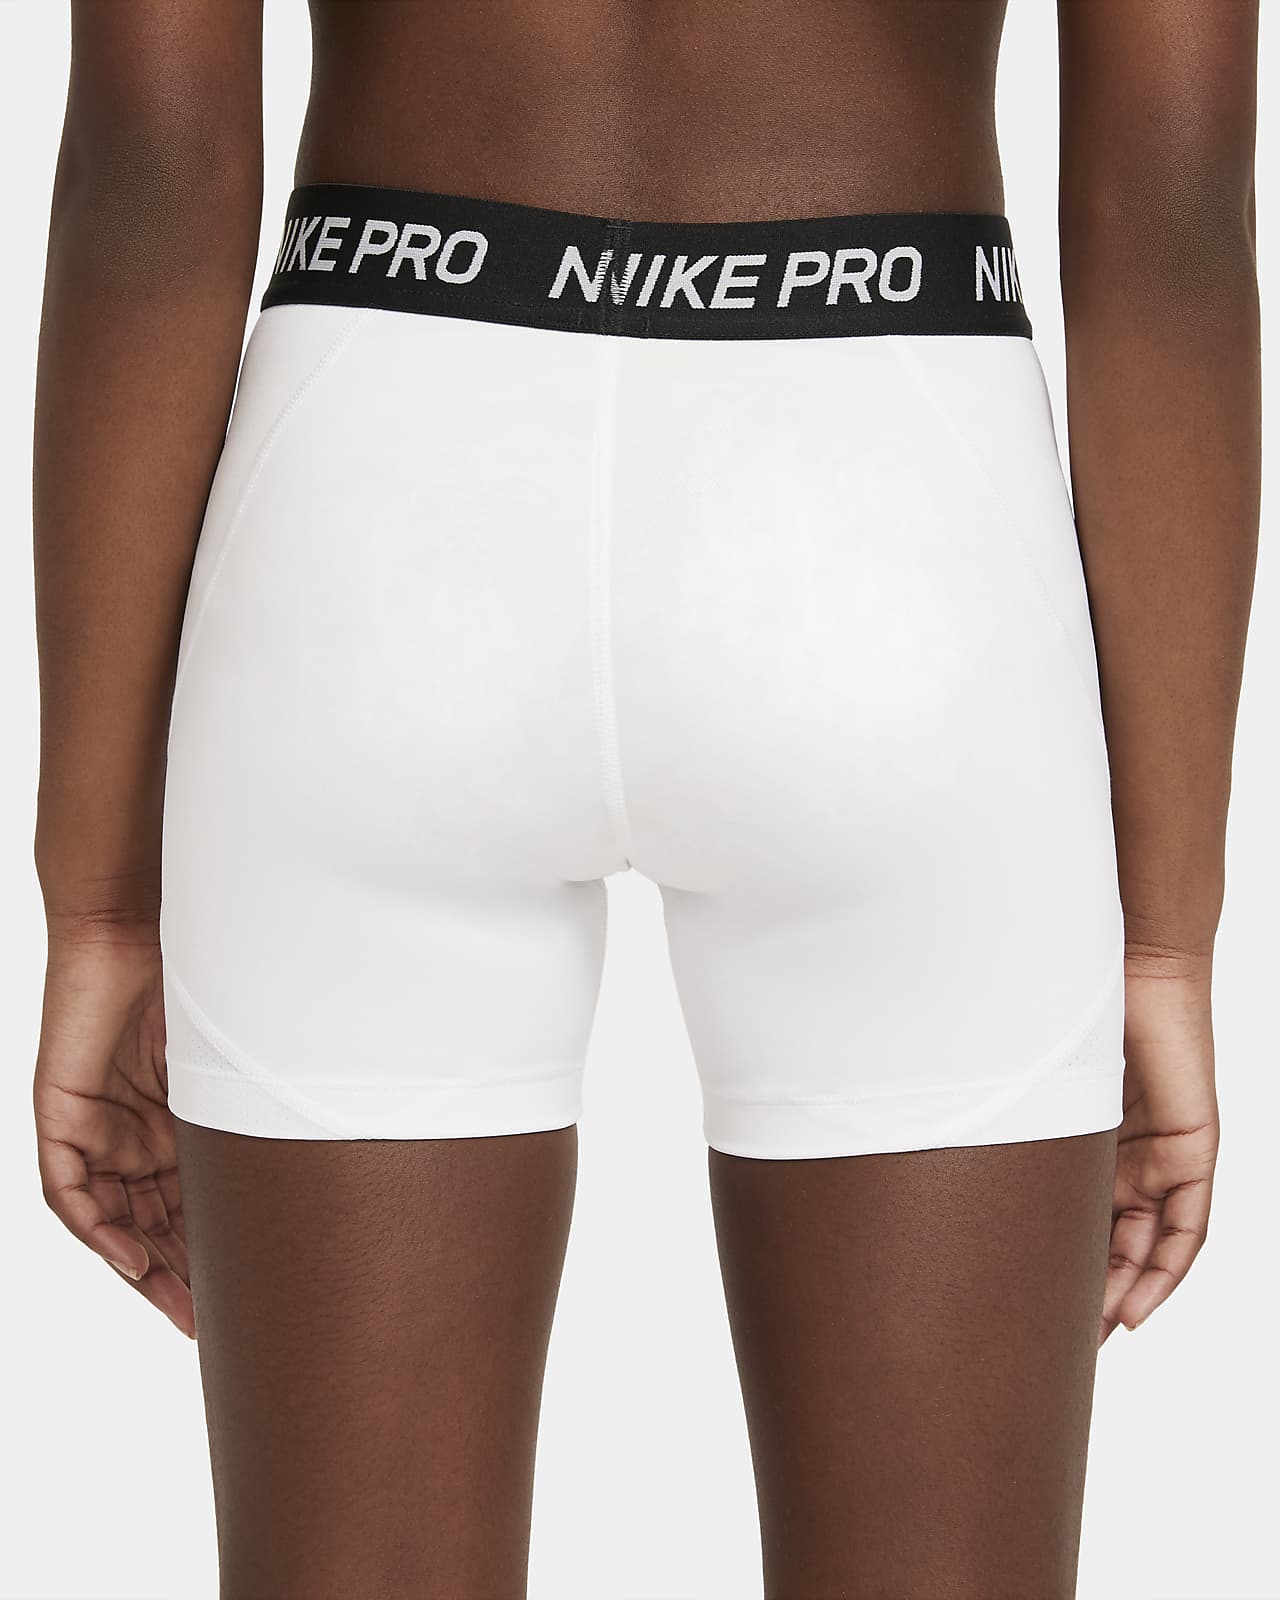 nike boy shorts women's